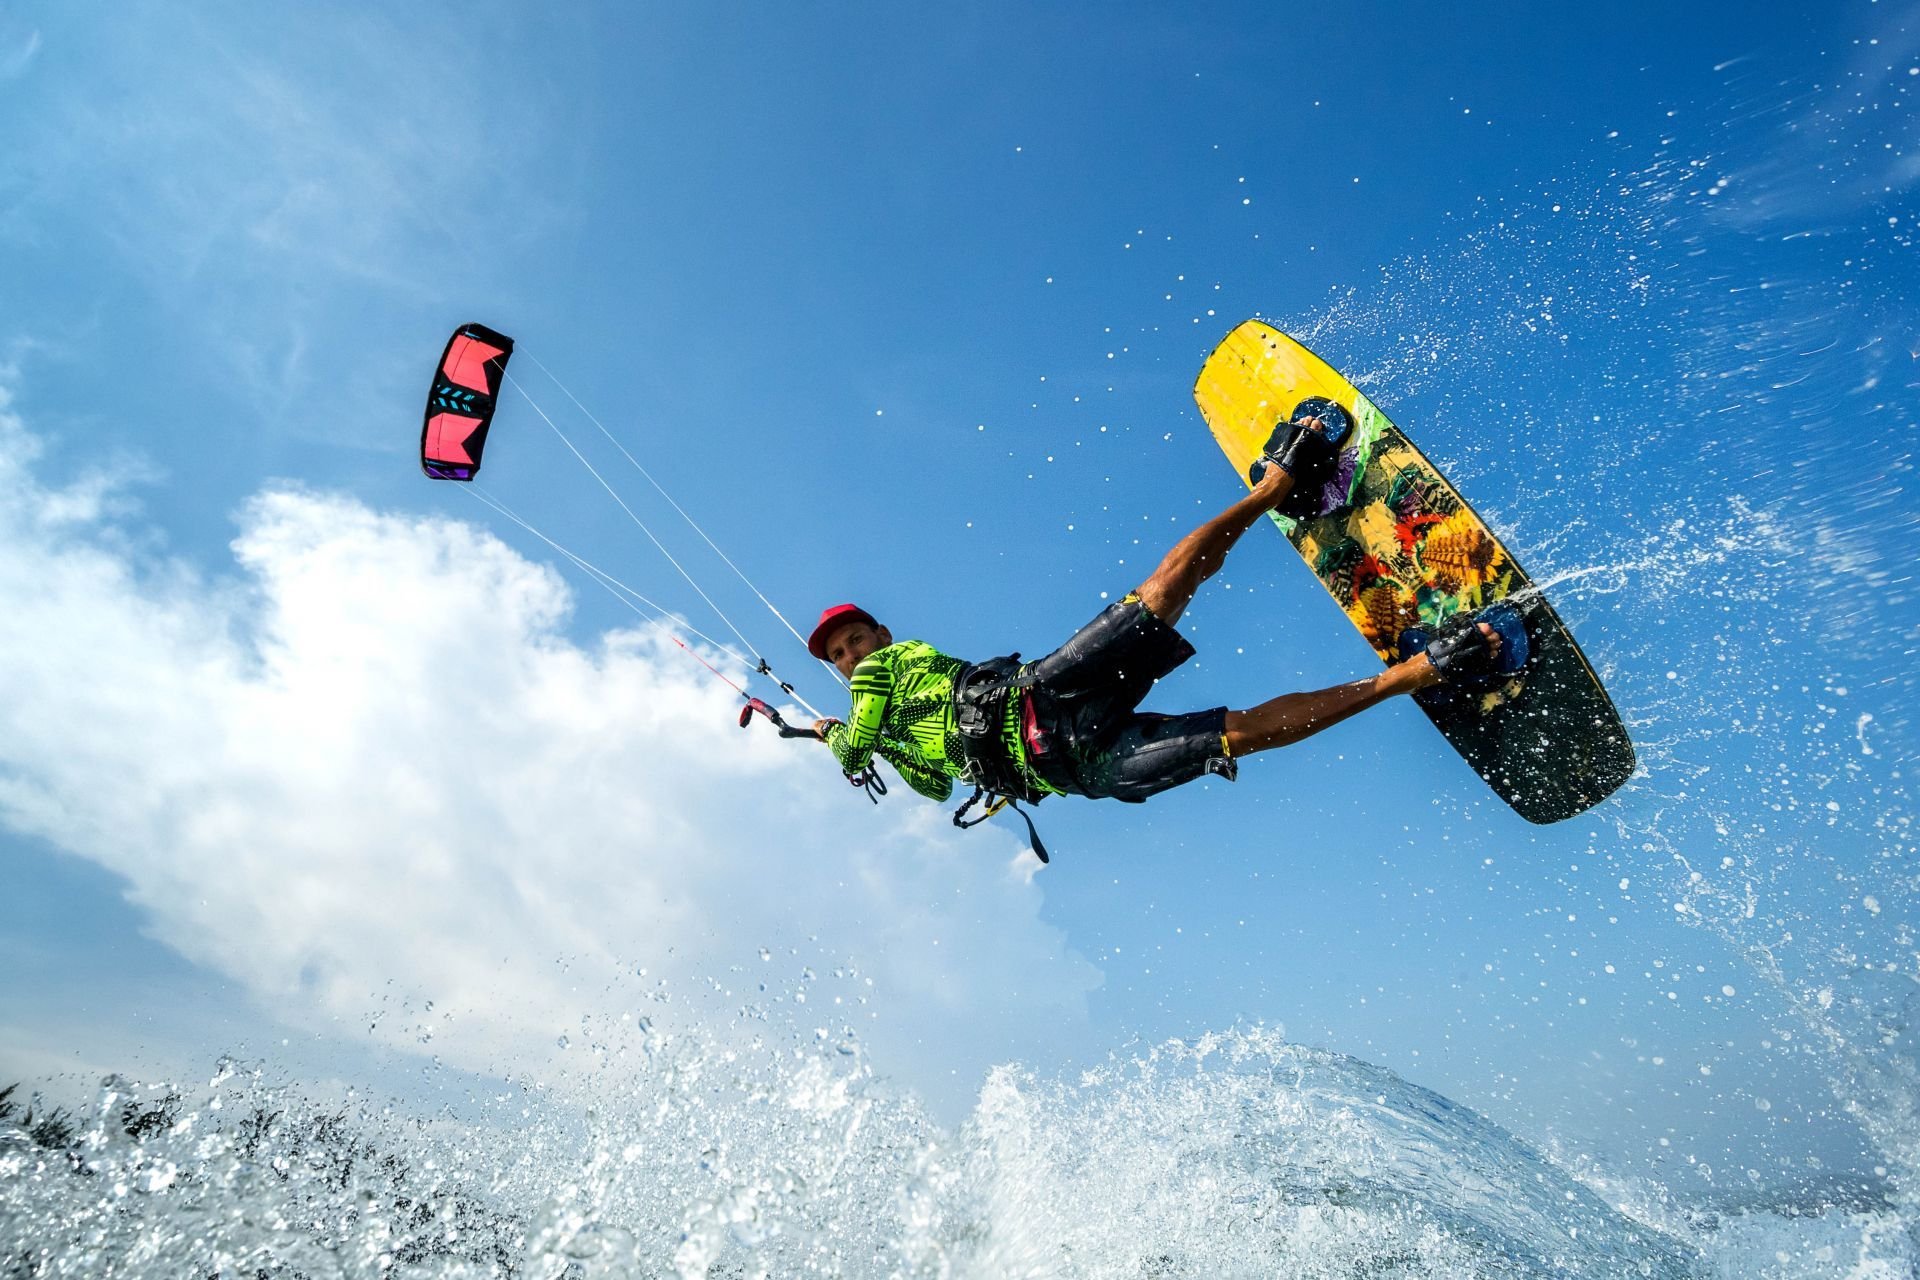  Un tânăr de 36 de ani s-a înecat după ce a căzut în mare în timp ce practica kite-surfing